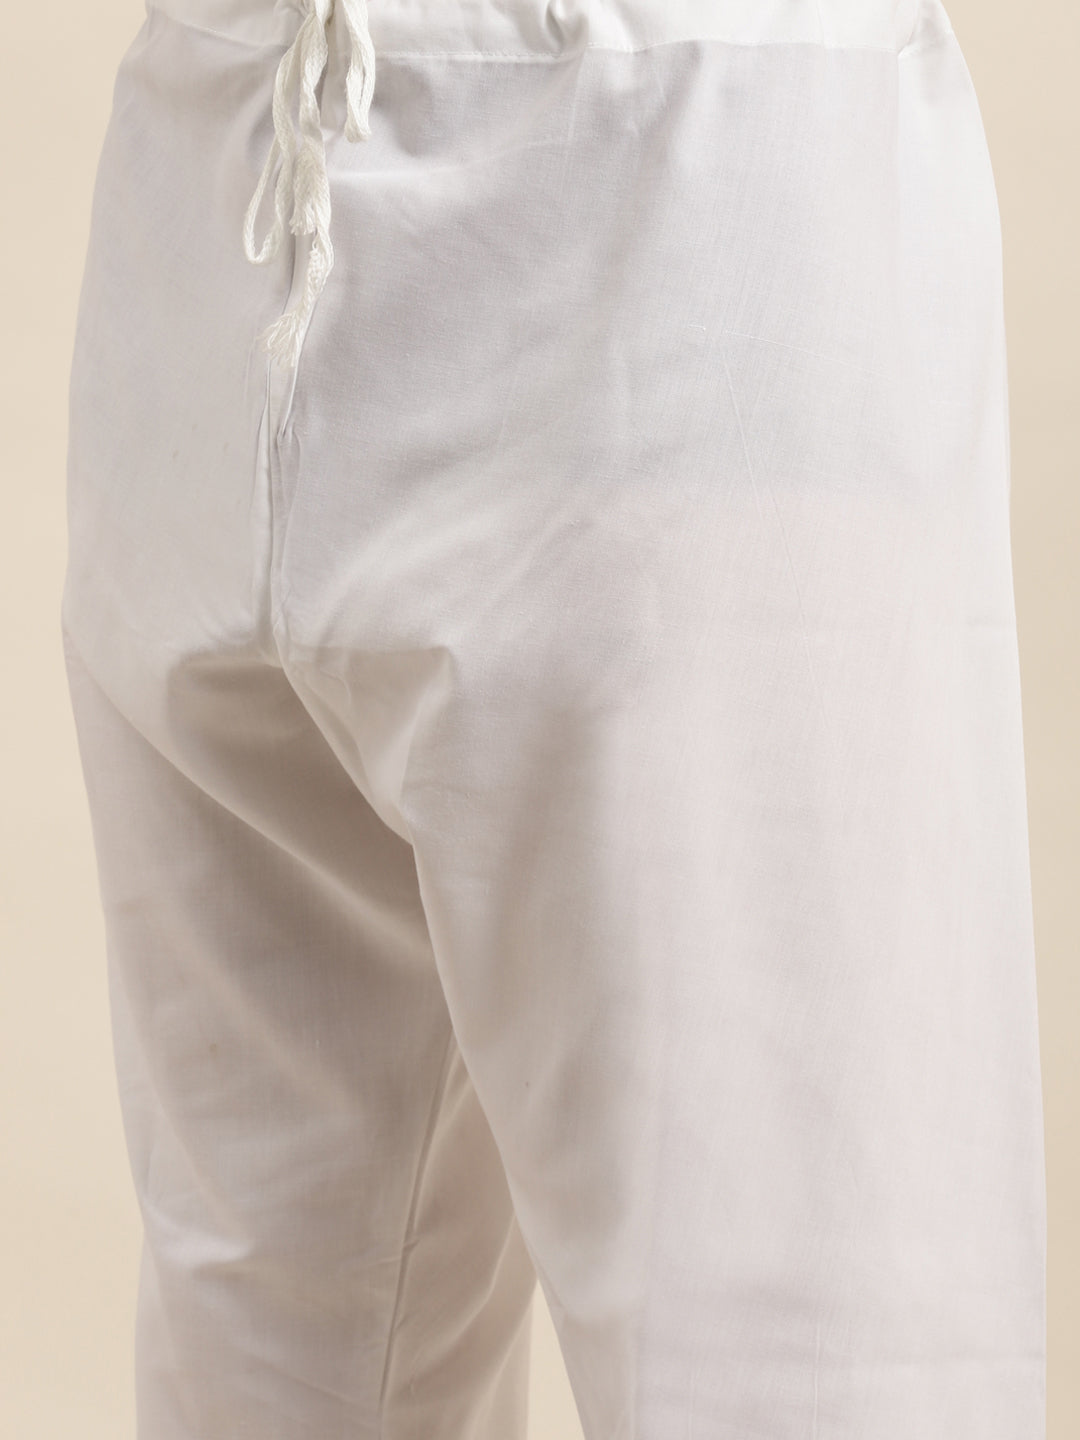 Men's Cotton Grey & Black Churidar Pyjama Set - Sojanya